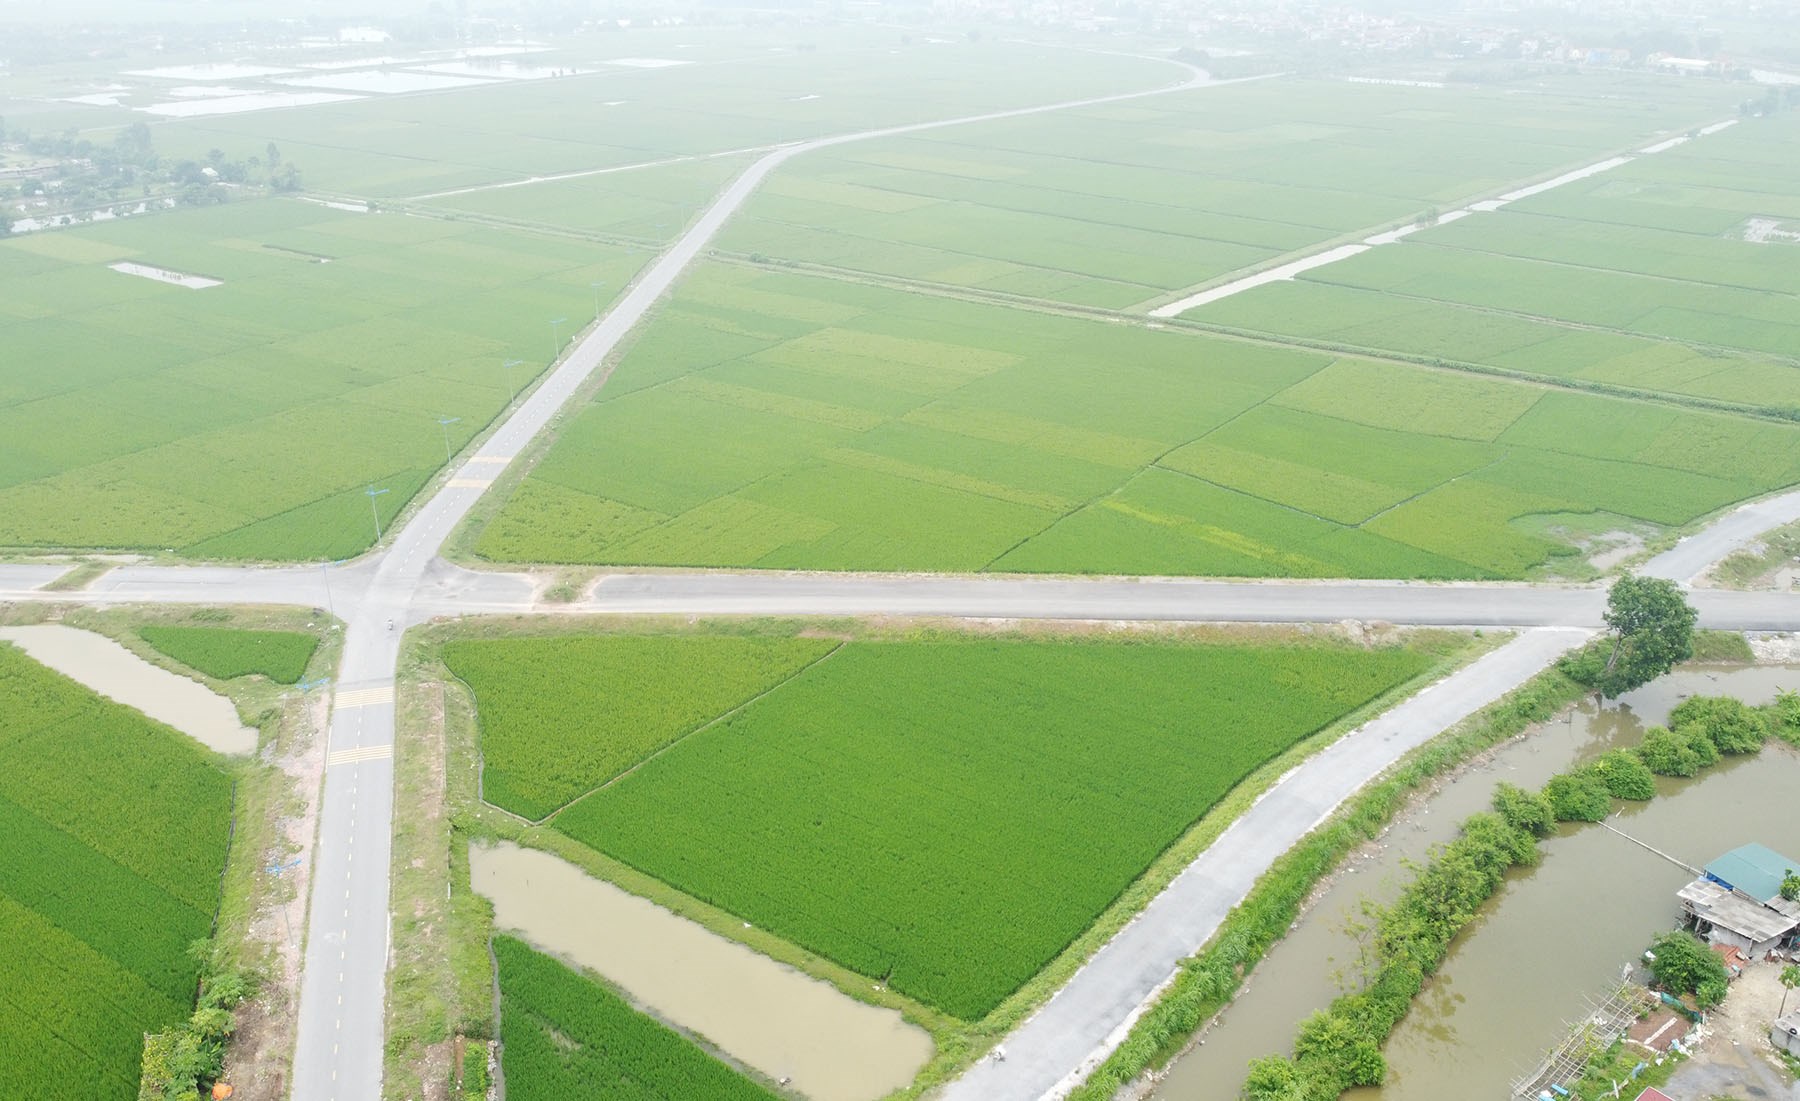 Hình ảnh vành đai 5 vùng Hà Nội đang xây dựng đoạn chợ Dầu - Ba Đa, Hà Nam